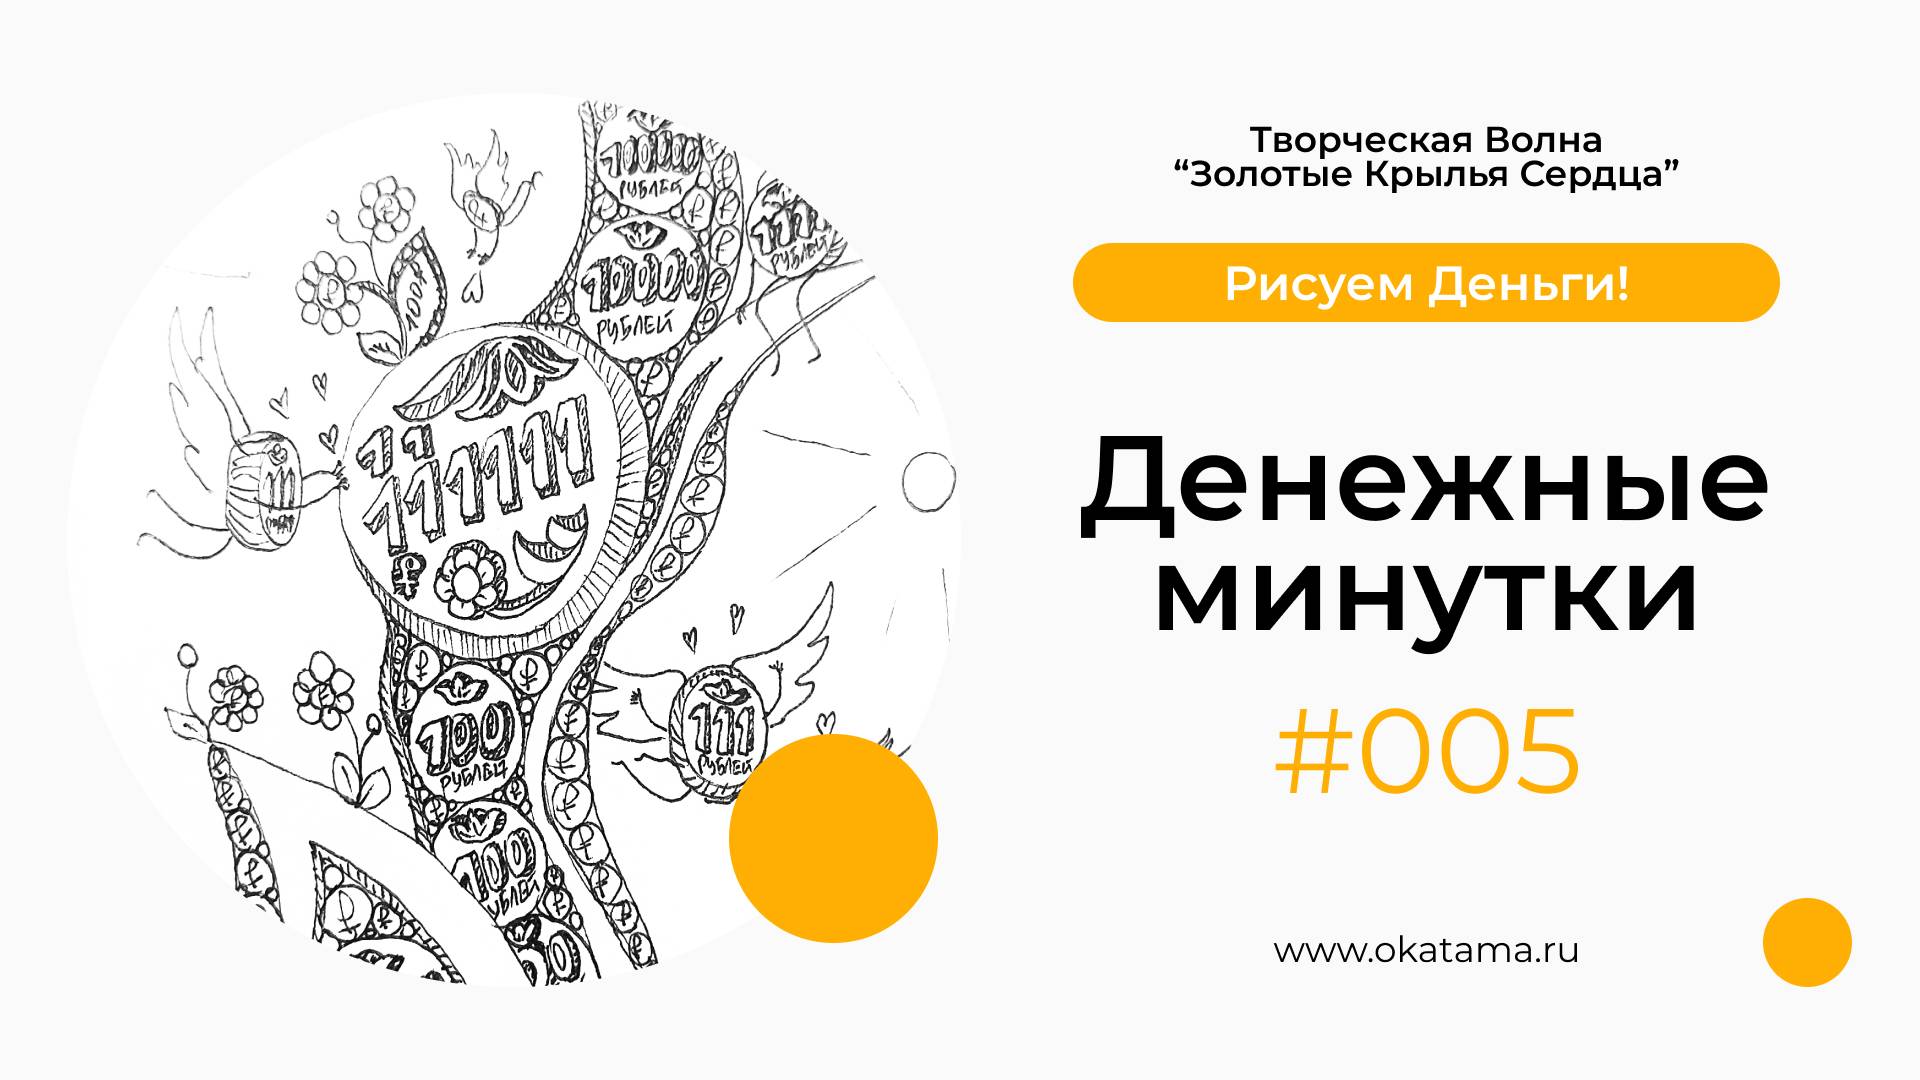 Денежные минутки 005 (okatama.ru)